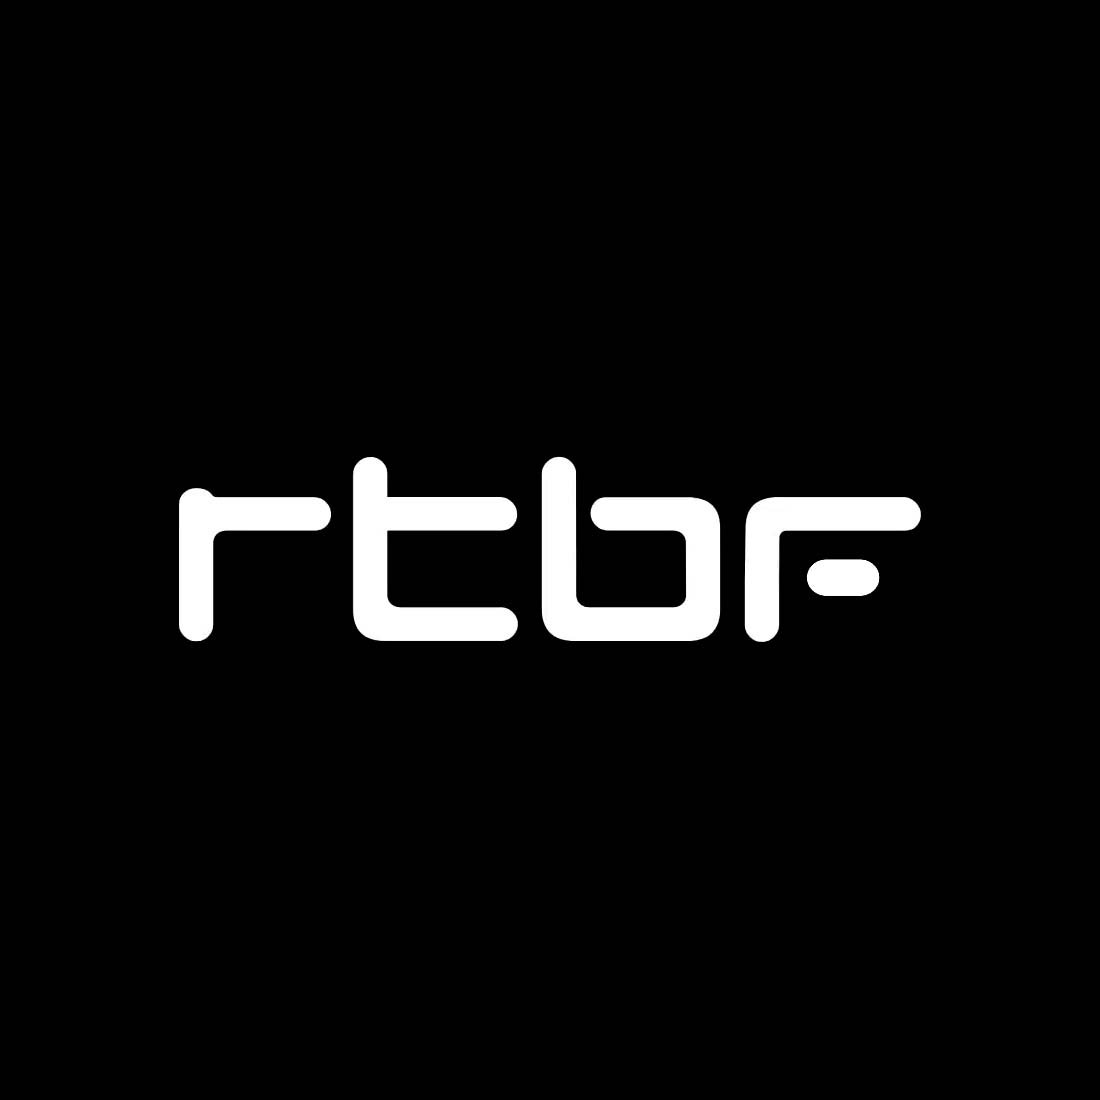 rtbf logo white.jpg